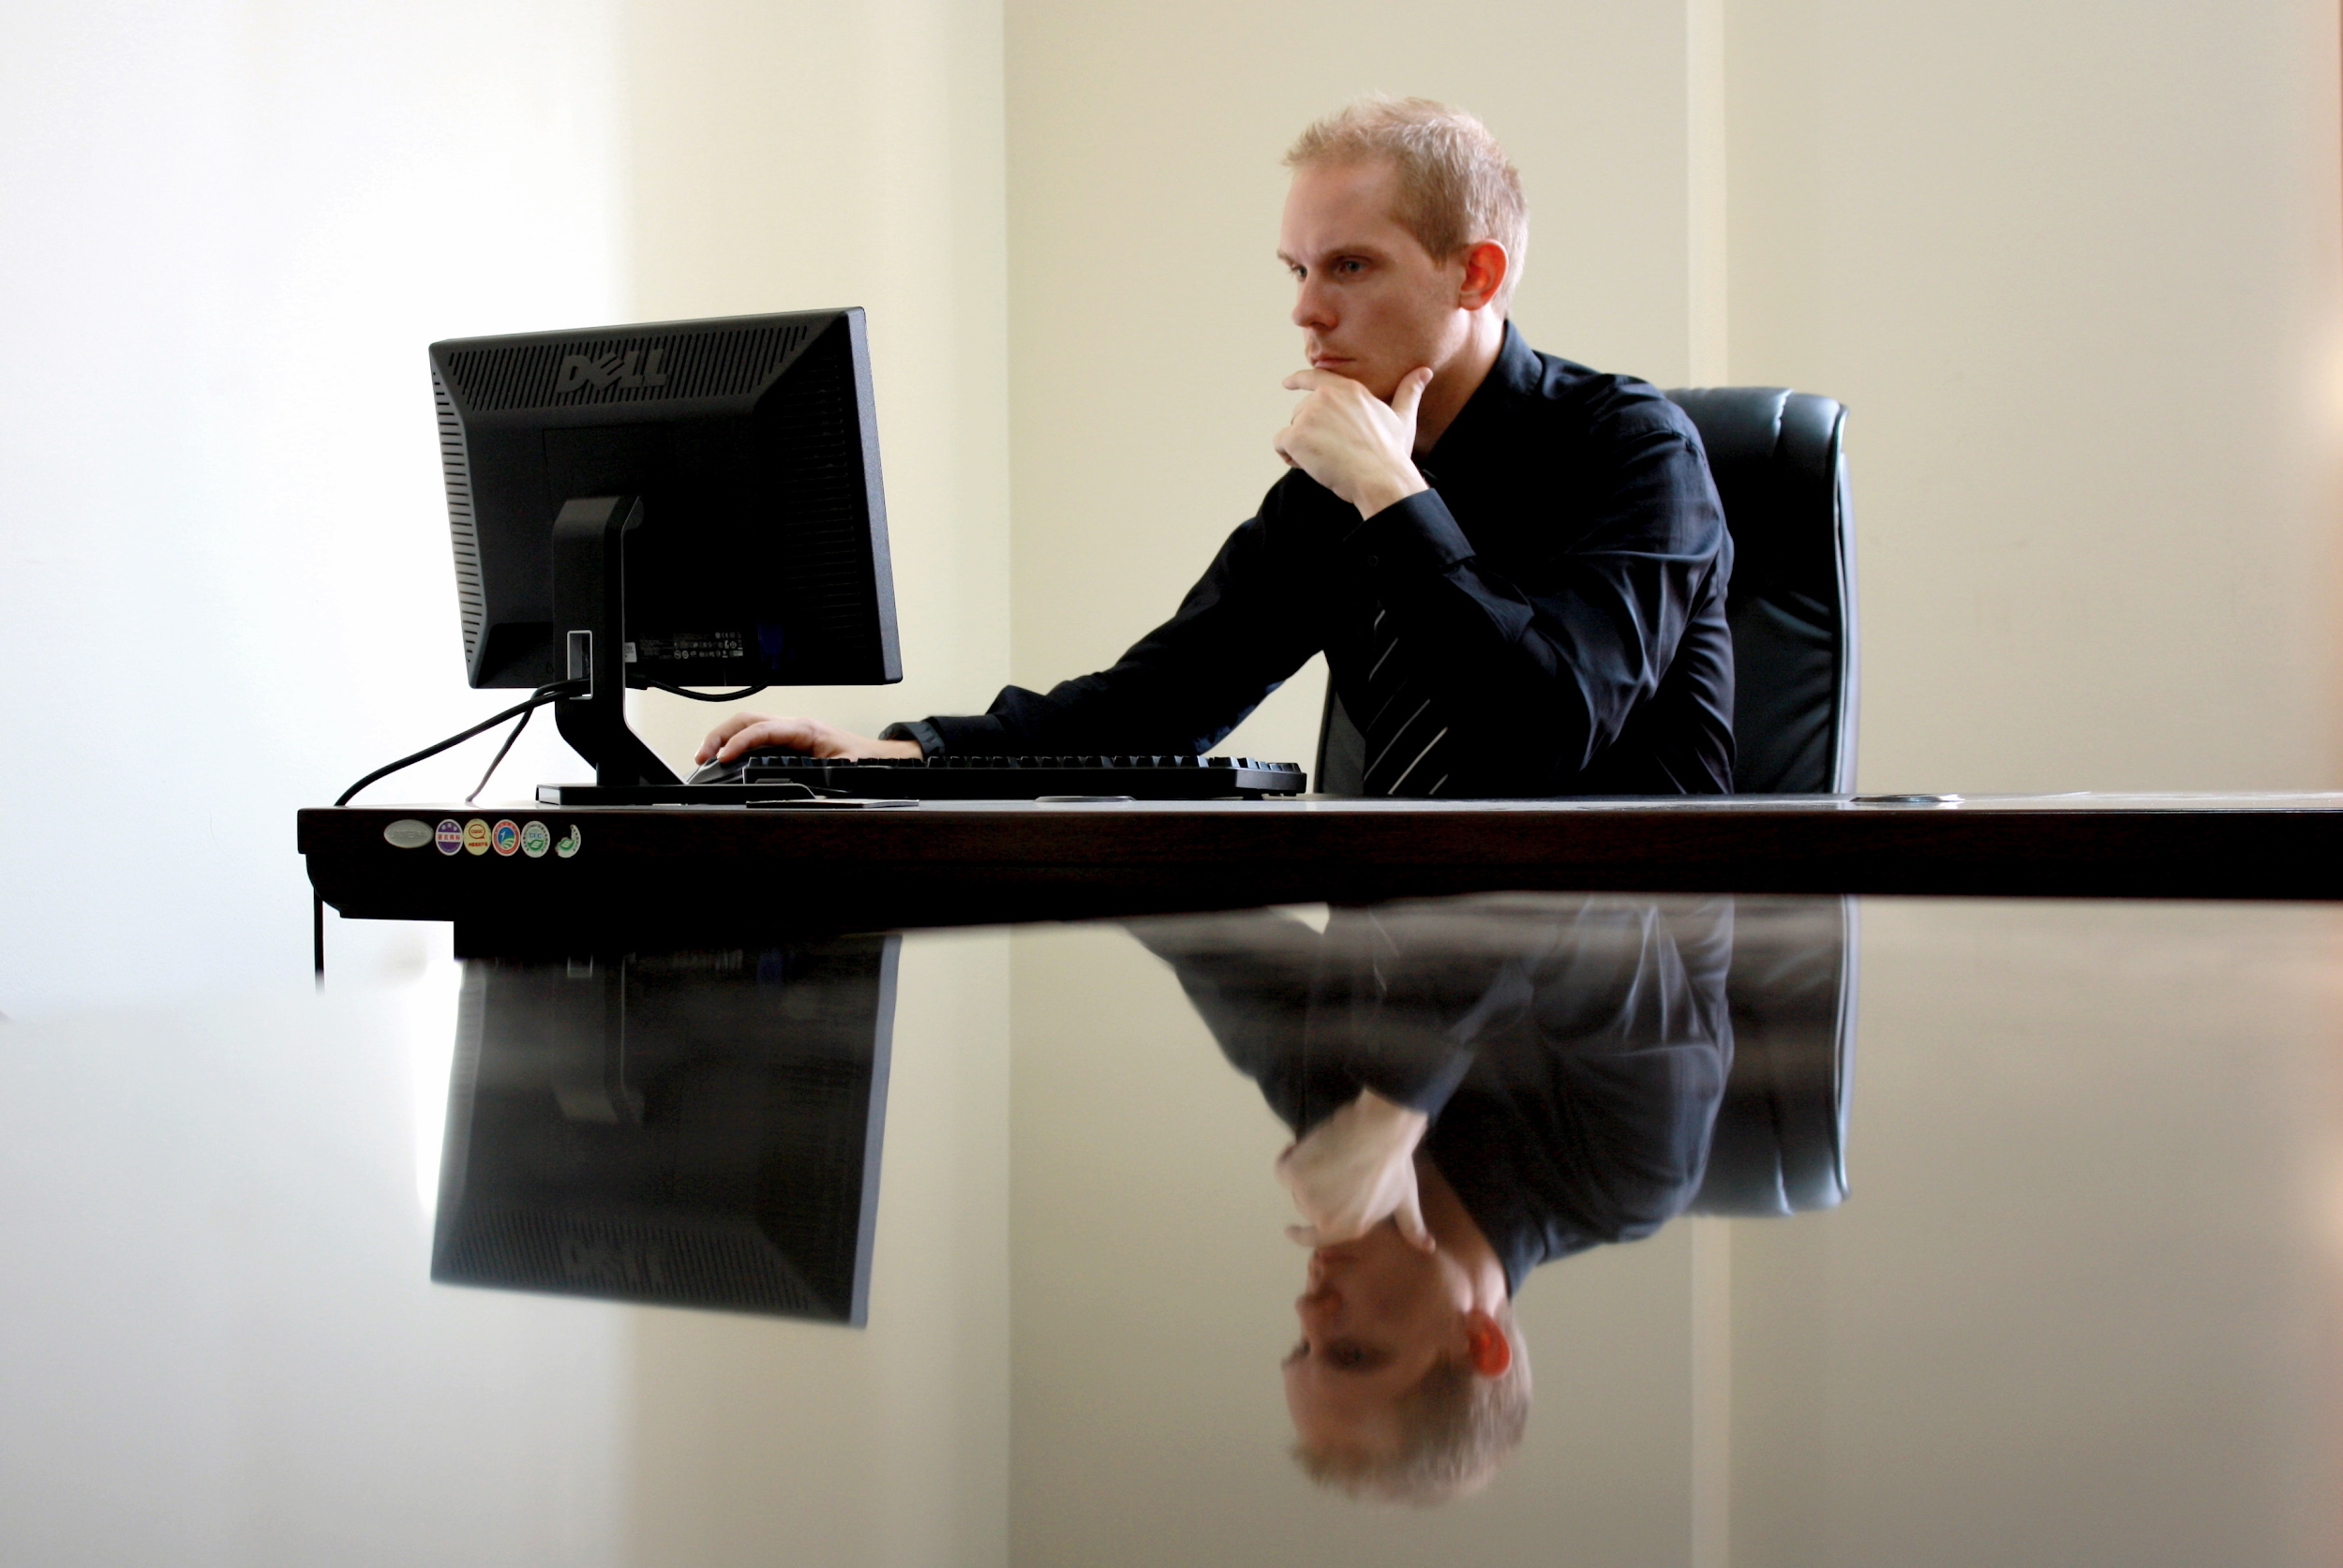 Man using computer at desk